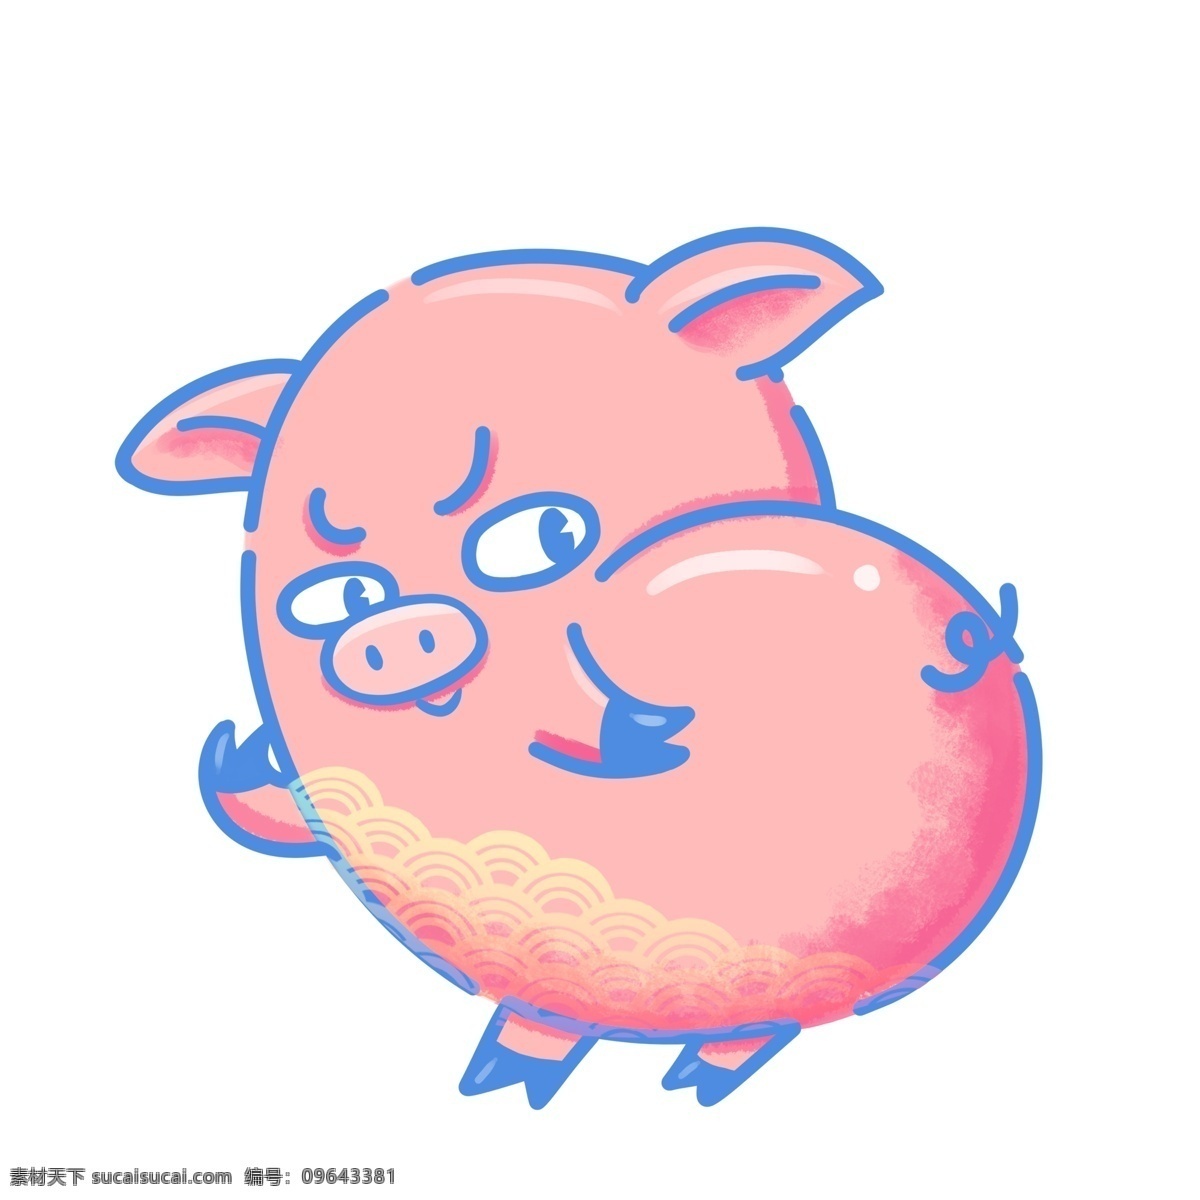 可爱 回头 打招呼 猪 哥哥 猪年 情侣猪 粉红猪 可爱卡通猪 猪哥哥 猪头像 猪屁股 生肖猪